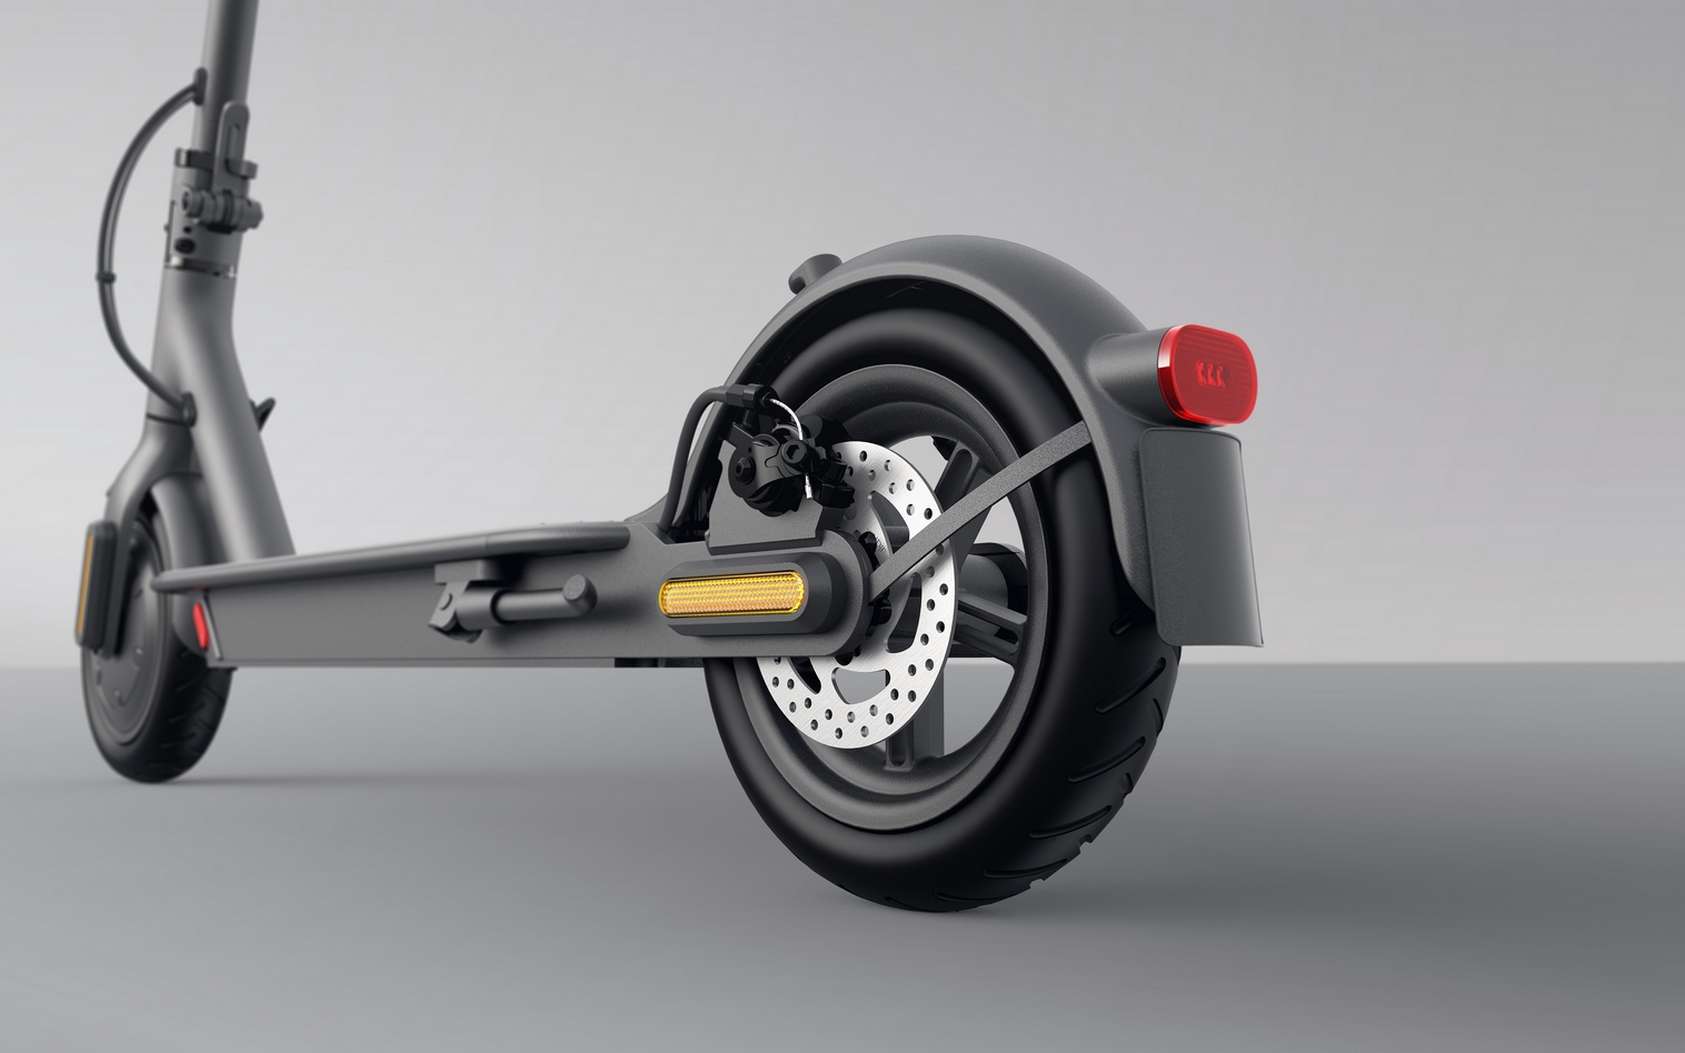 Les nouvelles trottinettes électriques Mi Electric Scooter de Xiaomi offrent une autonomie comprise entre 45 et 20 km. © Xiaomi